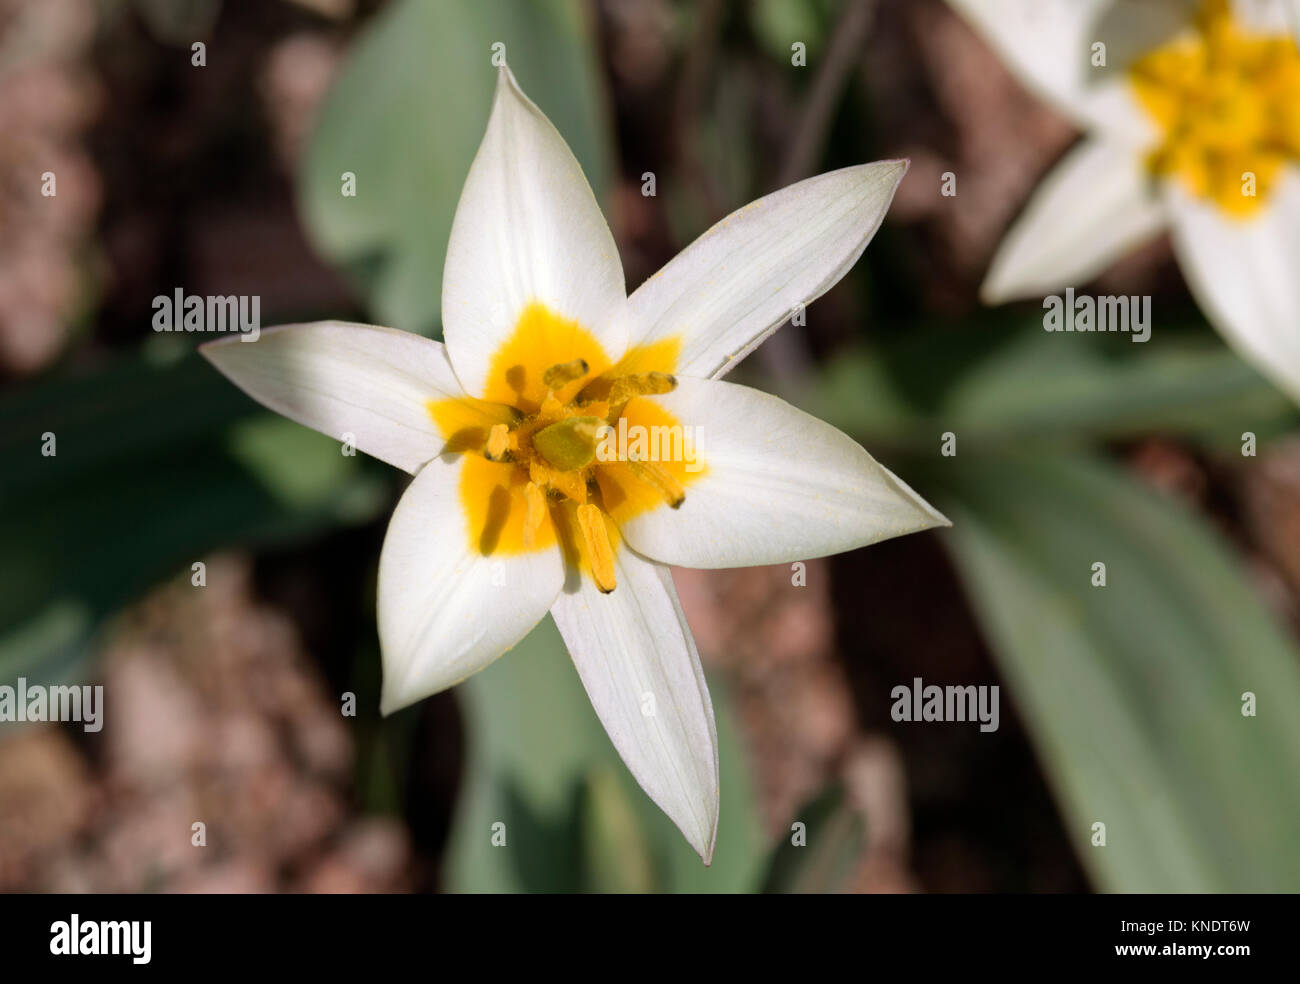 White wild tulips Stock Photo